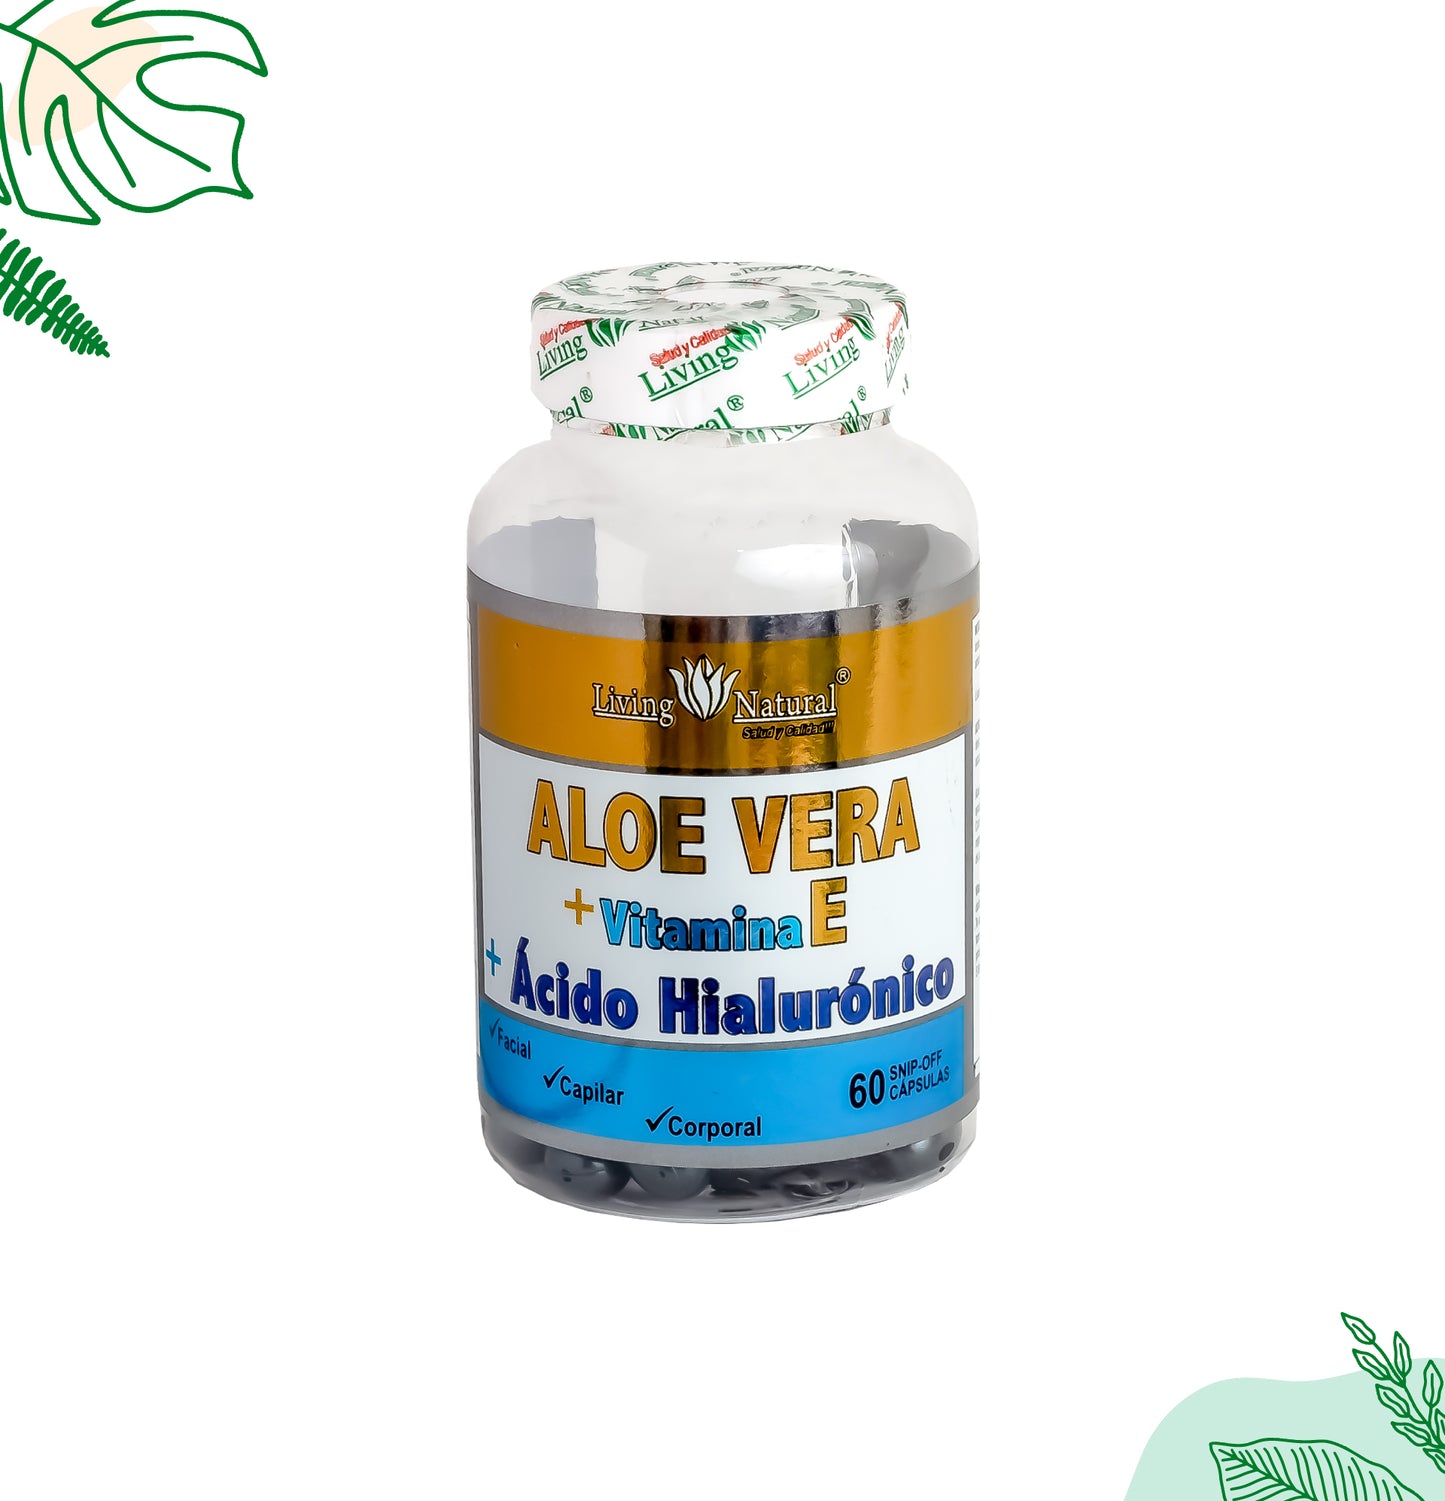 ALOE VERA FACIAL + ÁCIDO HIALURONICO | 600 mg | 60X